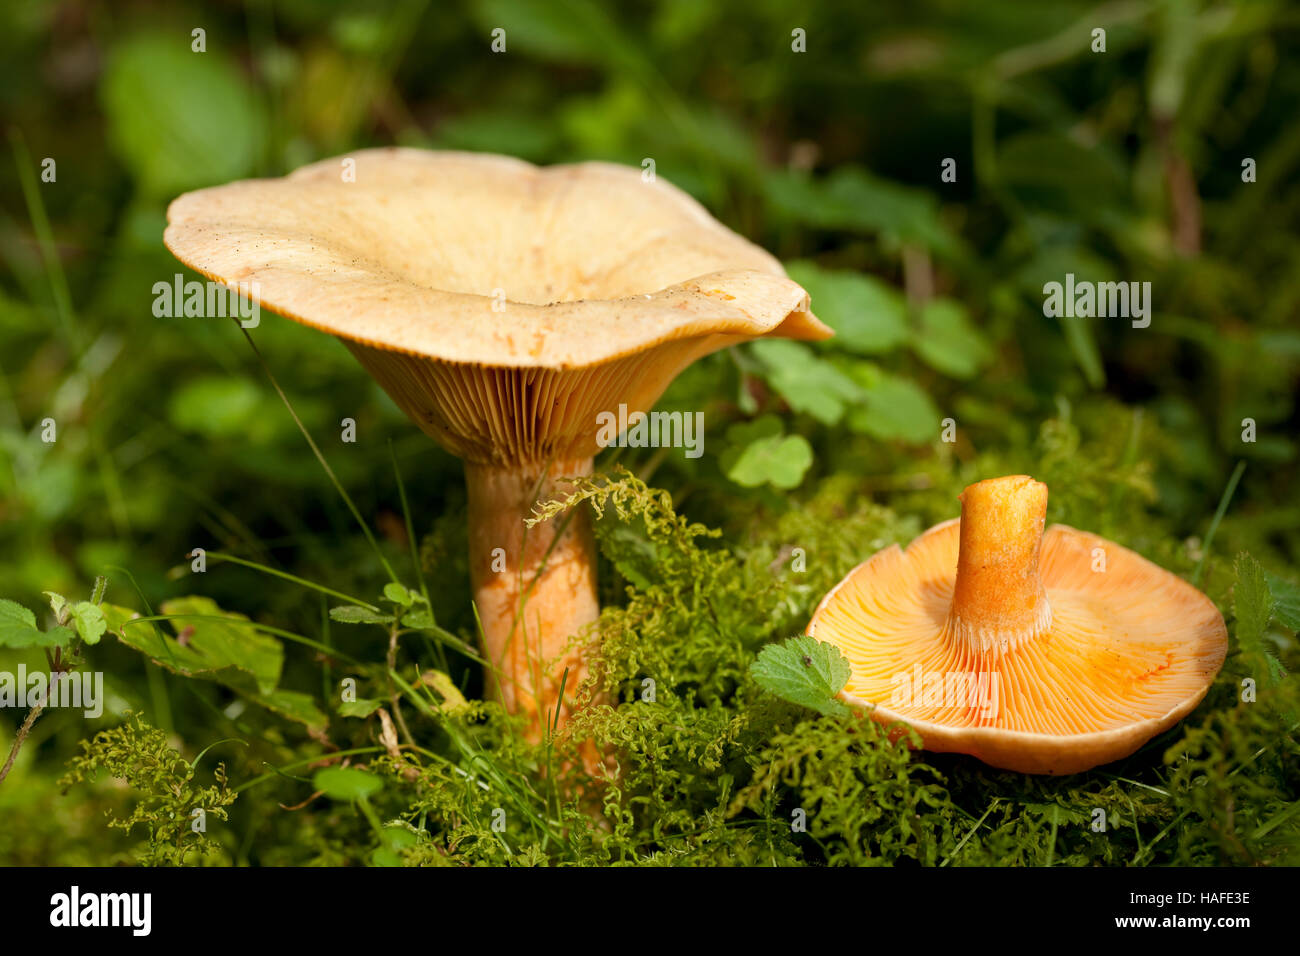 edible orange mushrooms (Lactarius deterrimus) in forest Stock Photo